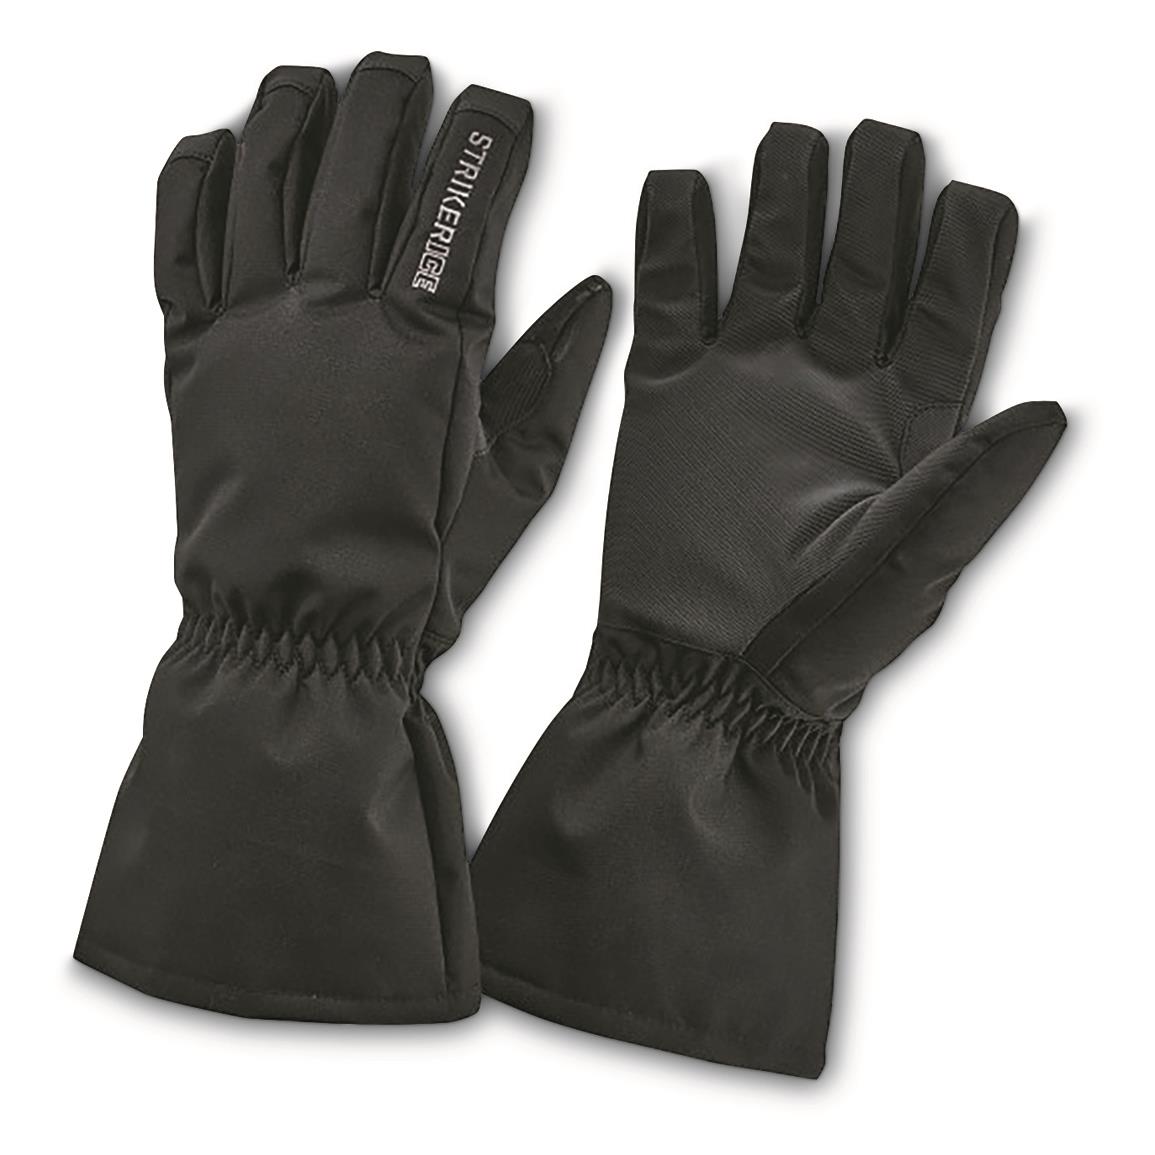 StrikerICE Trekker Ice Fishing Gloves, Black